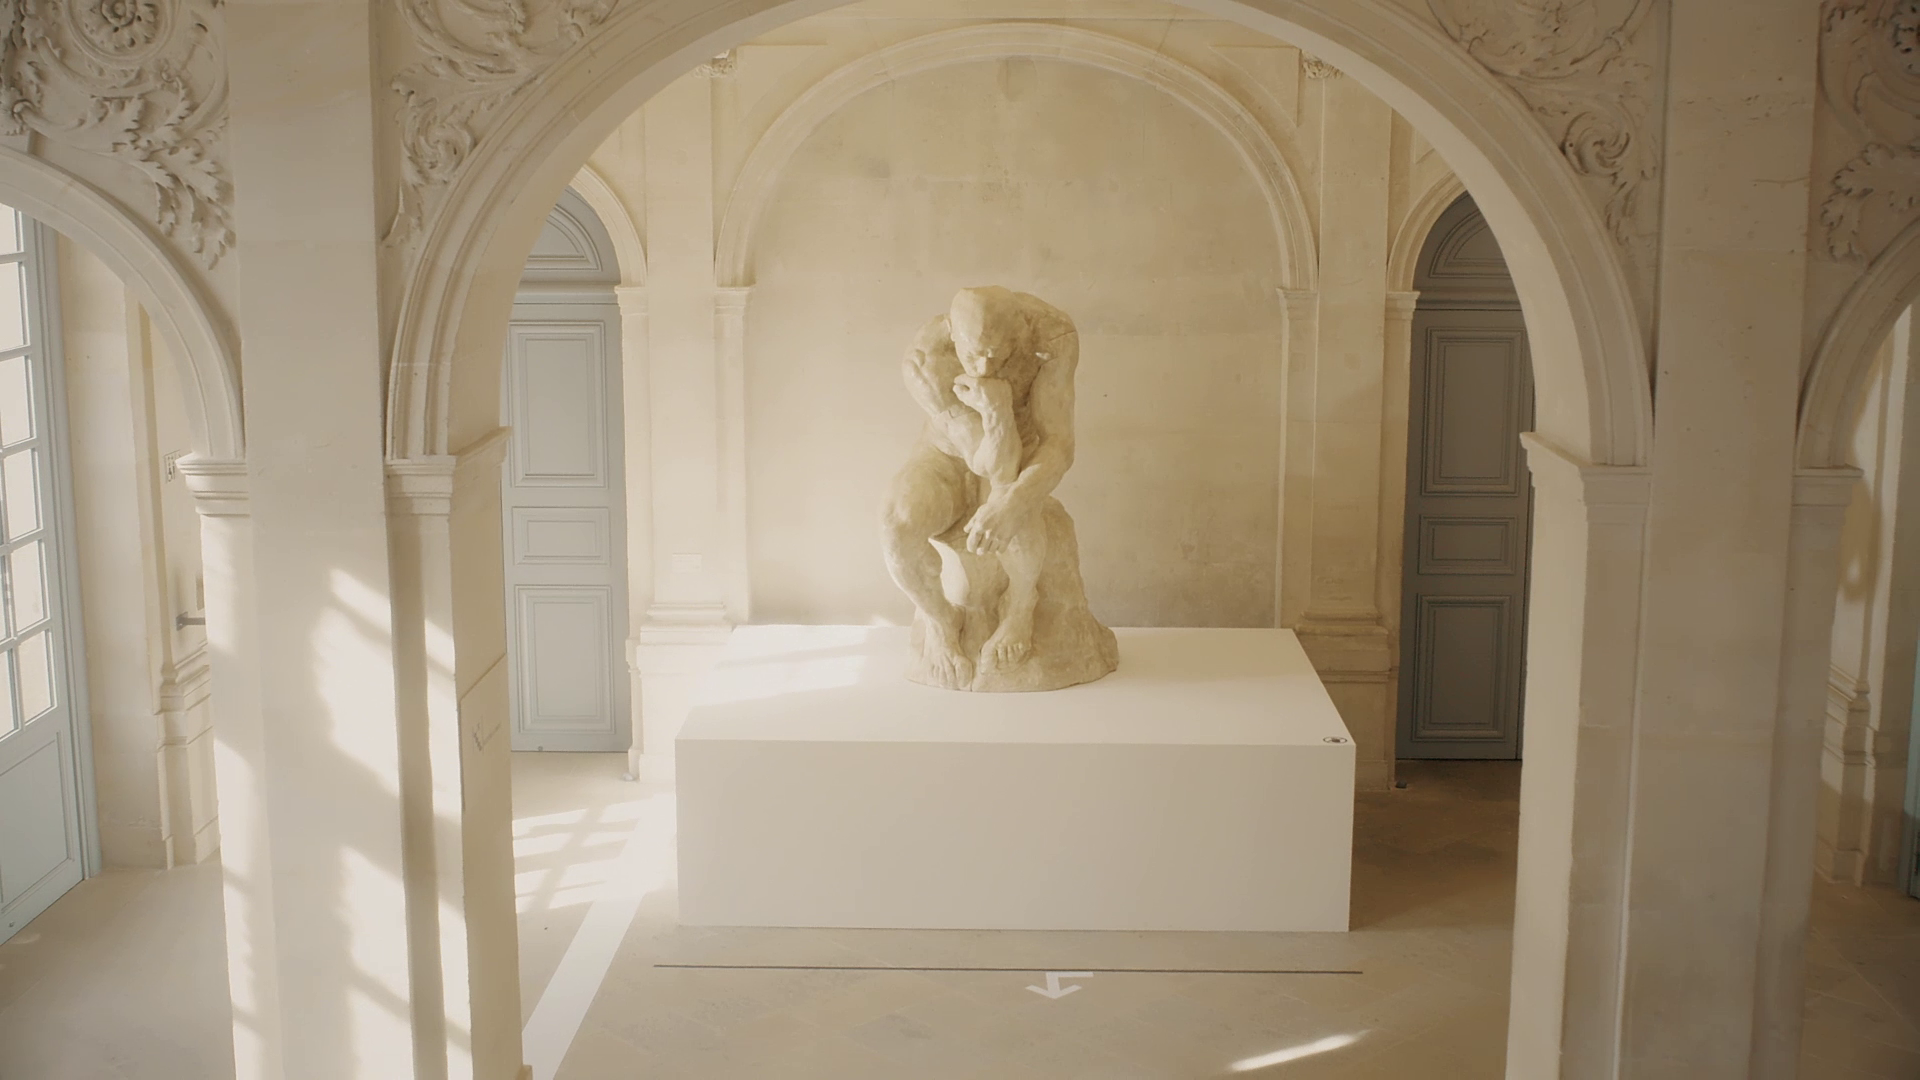 Bande-annonce Picasso-Rodin 